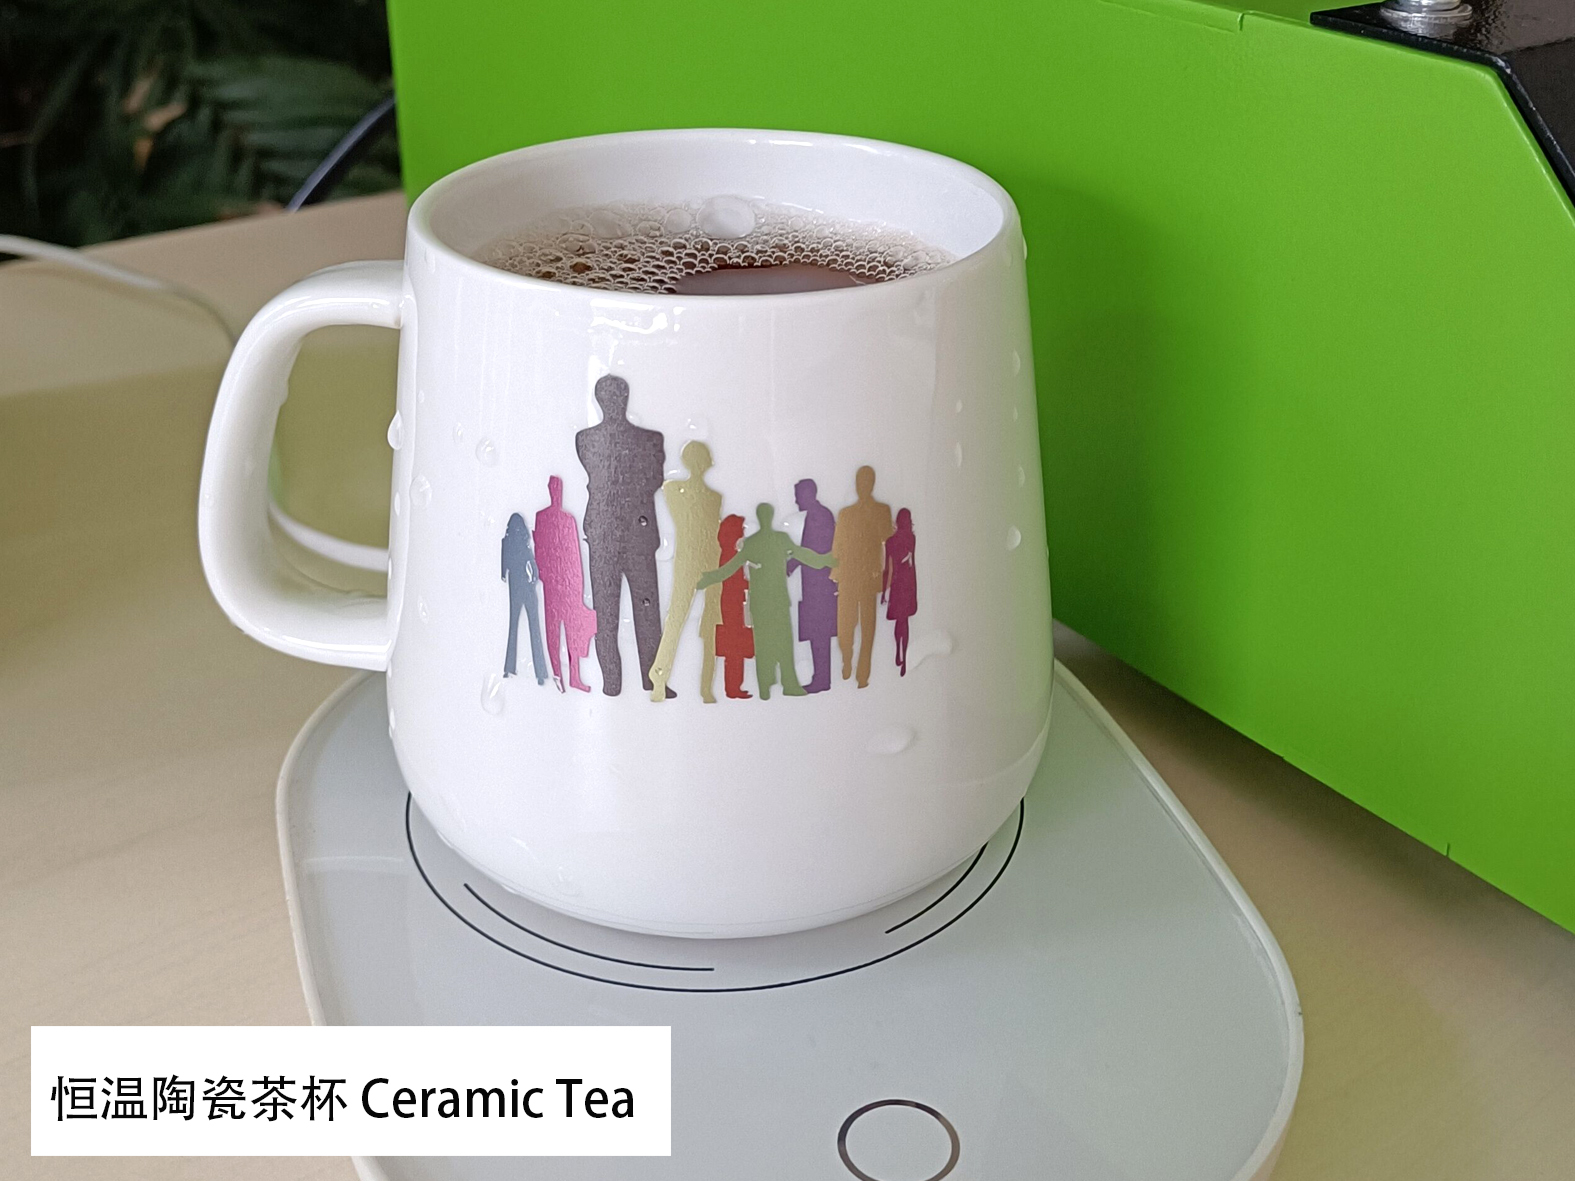 Termostatický hrnek s topnou podložkou 杯垫恒温陶瓷茶杯 Keramický čaj